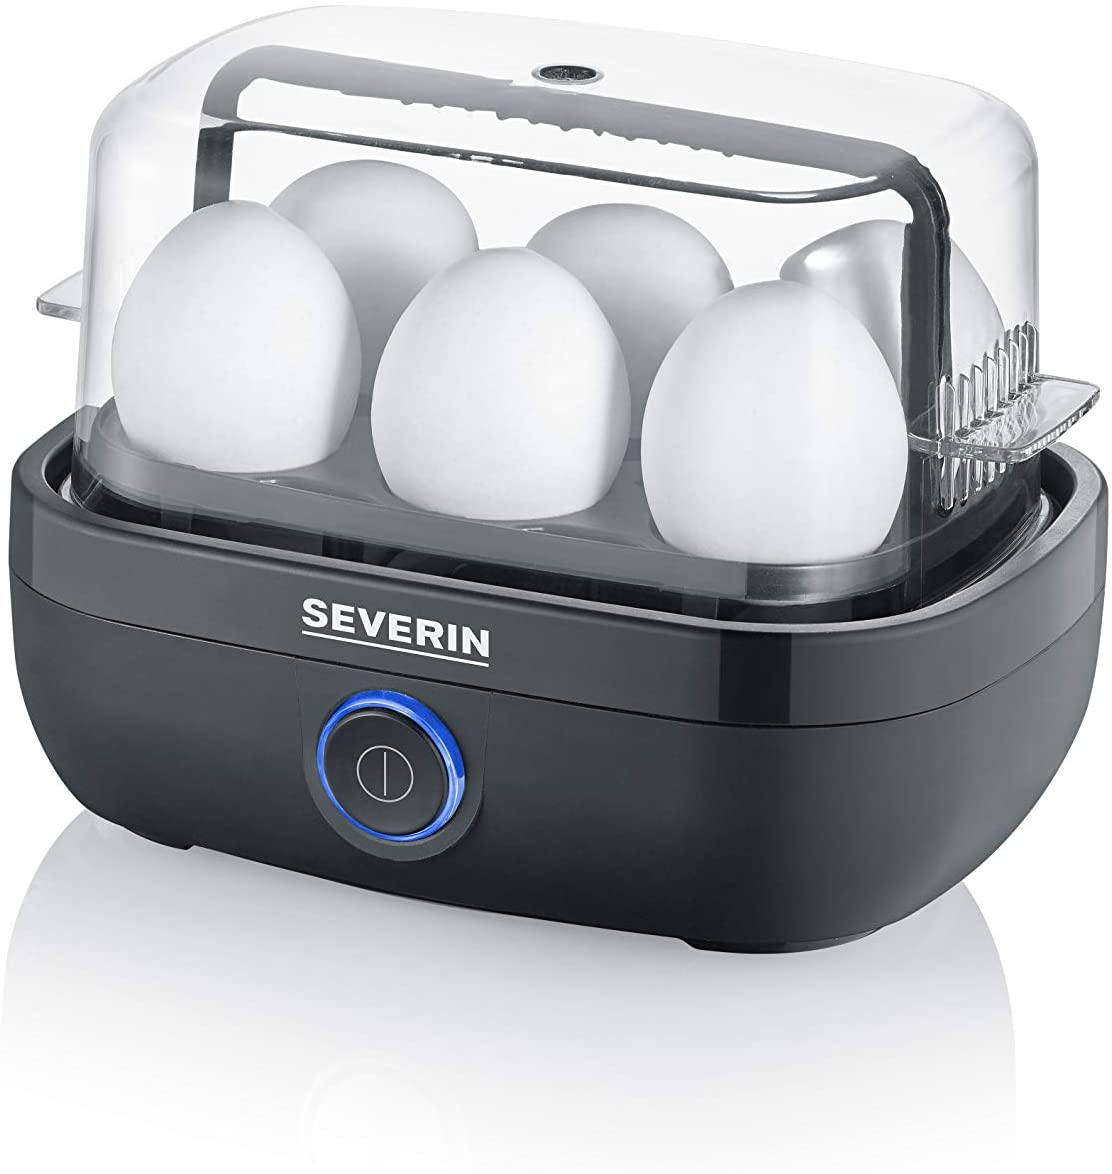 Severin egg cooker EK 3166 420W black - for 6 eggs 3165 (4008146036712)